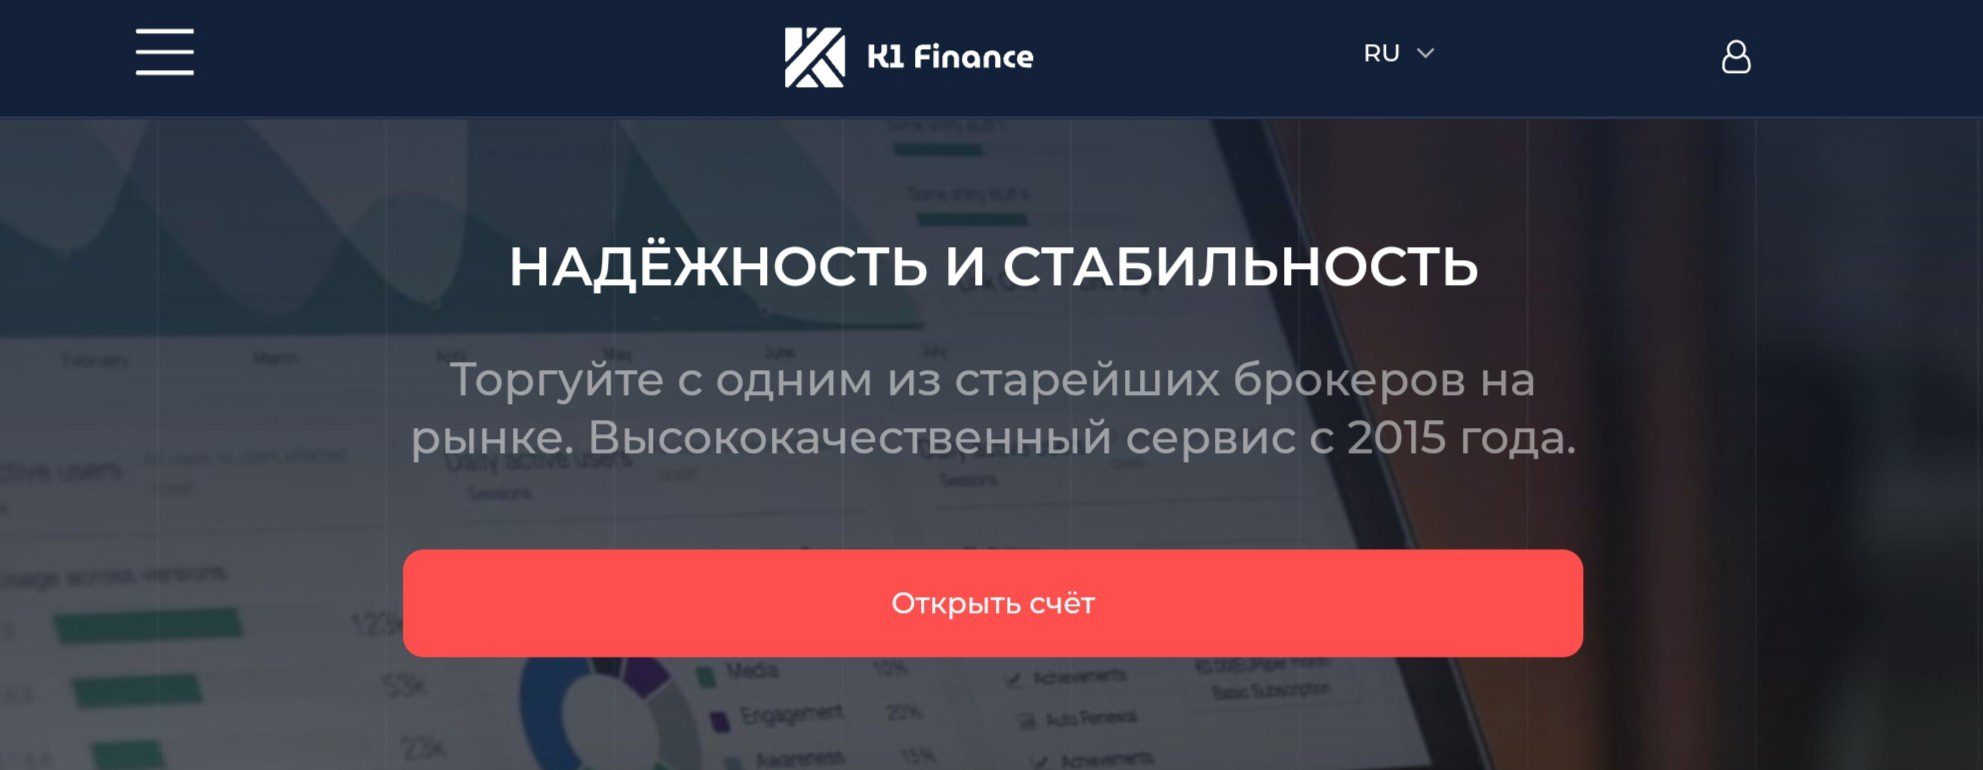 Обзор сайта брокера K1 Finance